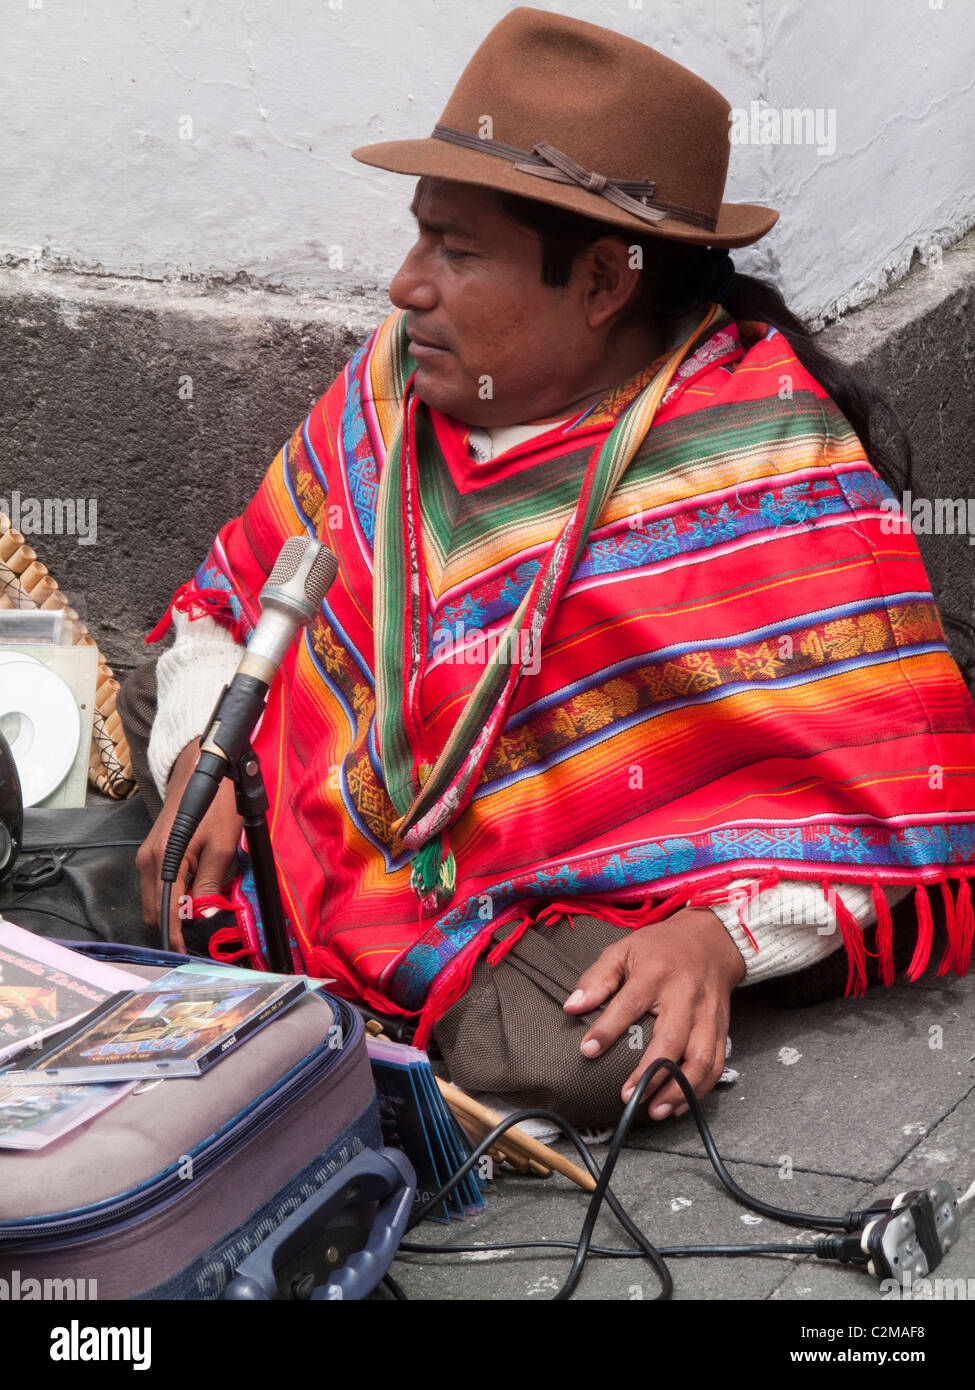 Rue-de-jatte artiste Karaoke en vêtements indiens traditionnels, Quito, Equateur, Amérique du Sud Banque D'Images